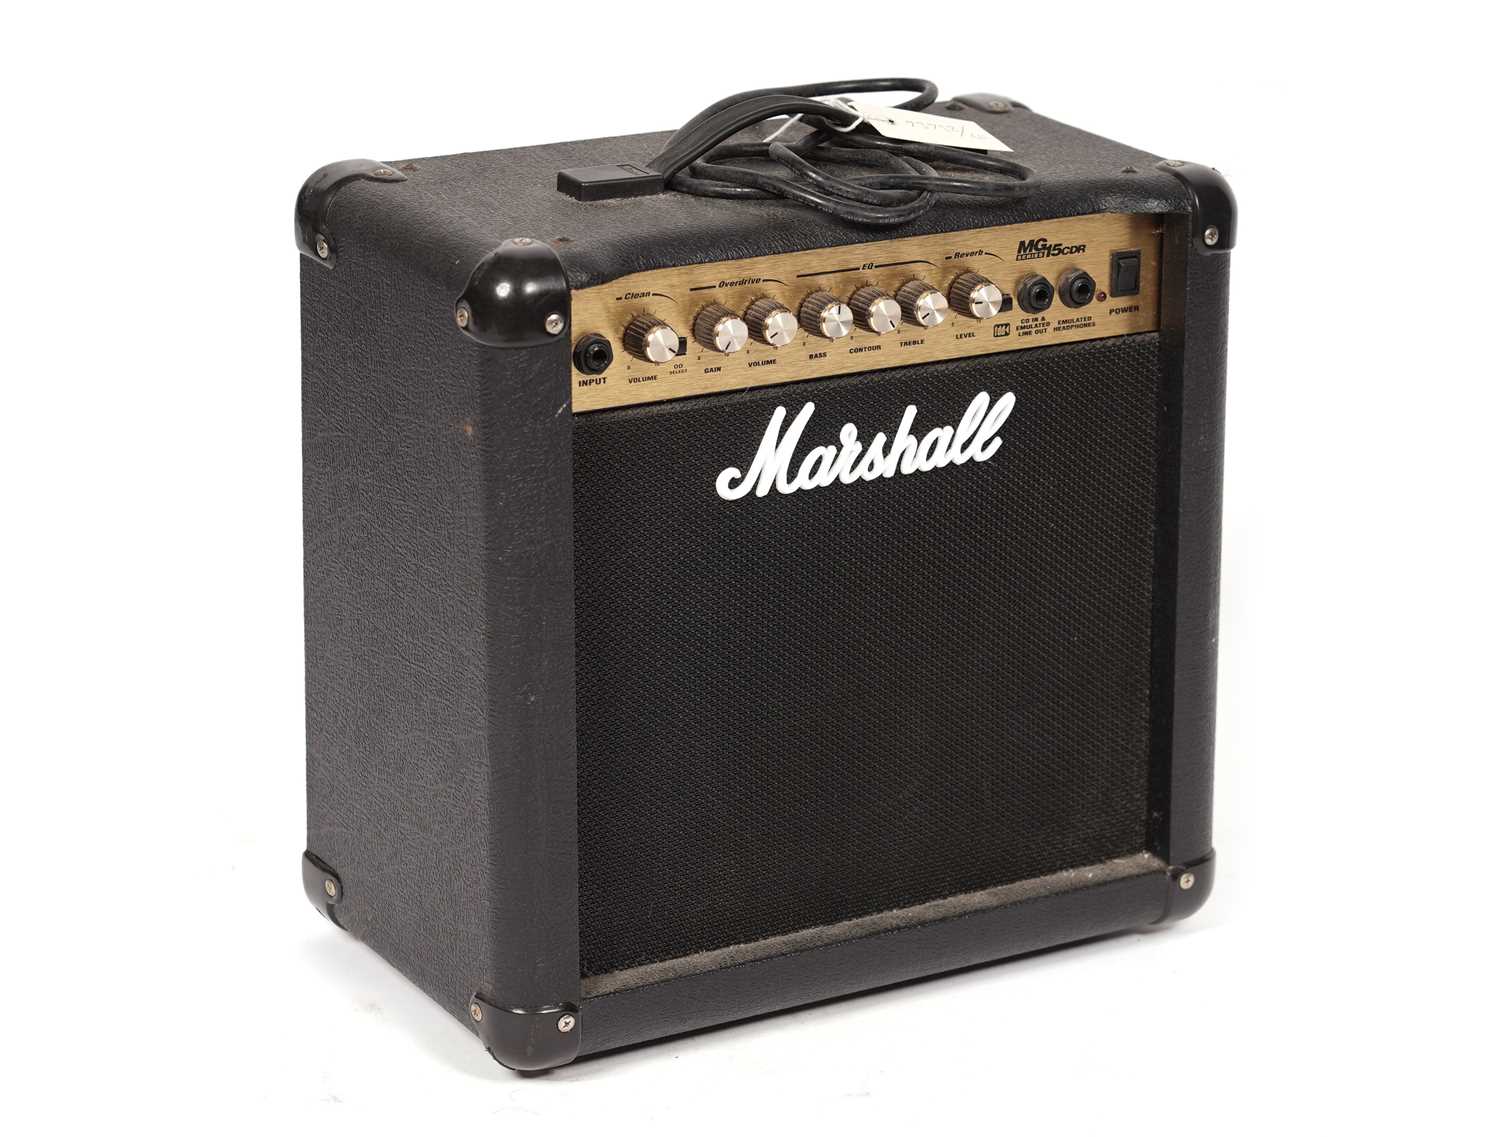 A Marshall MG15CDR guitar amp